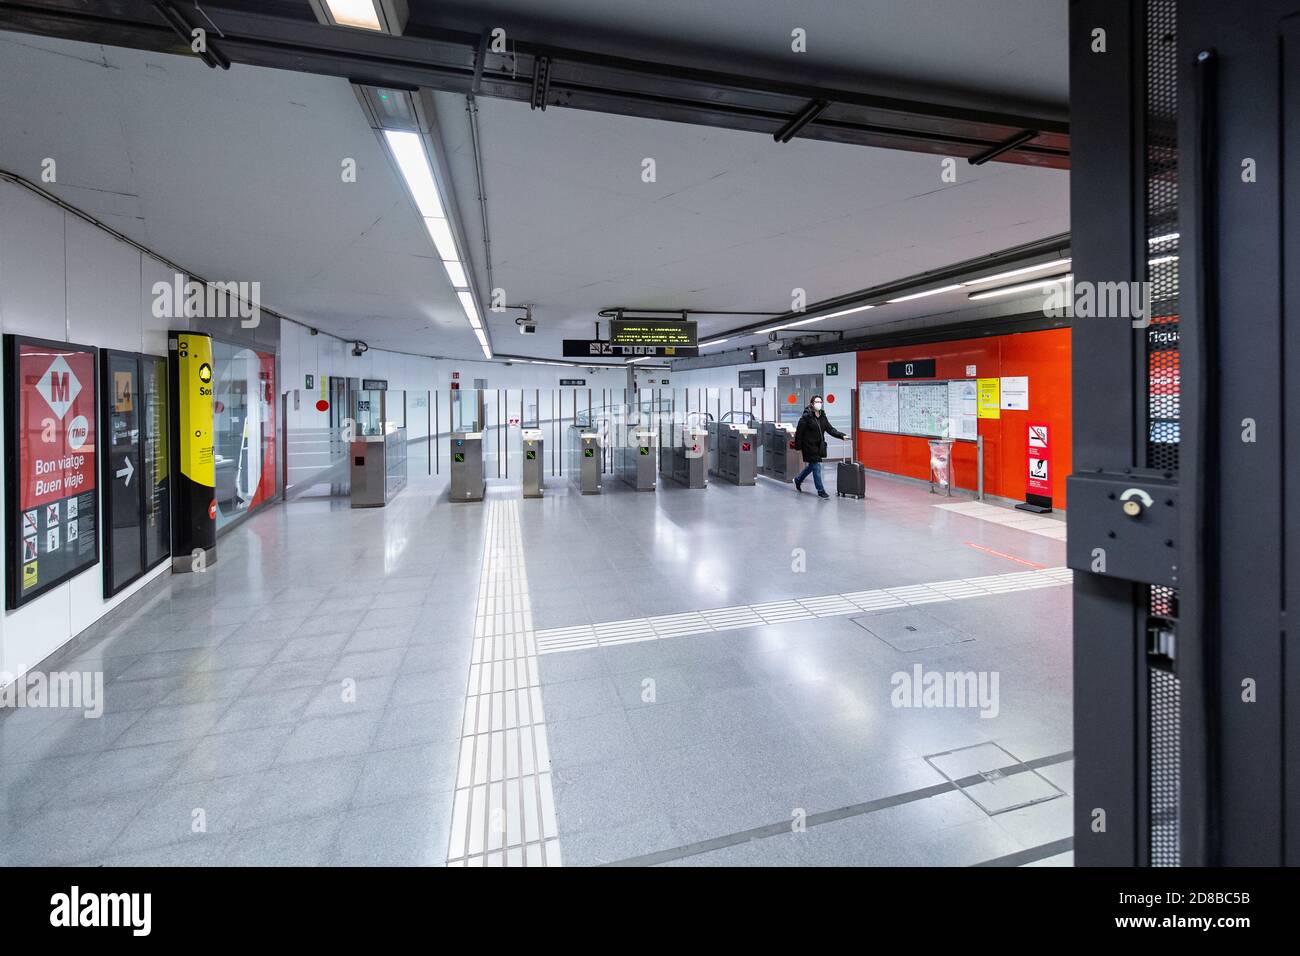 2020.10.28. Barcelone, Espagne. 22:45 h. Une femme quitte la gare de Selva de Mar pendant les premières heures du couvre-feu de cette journée. © Aitor Rodero. Banque D'Images